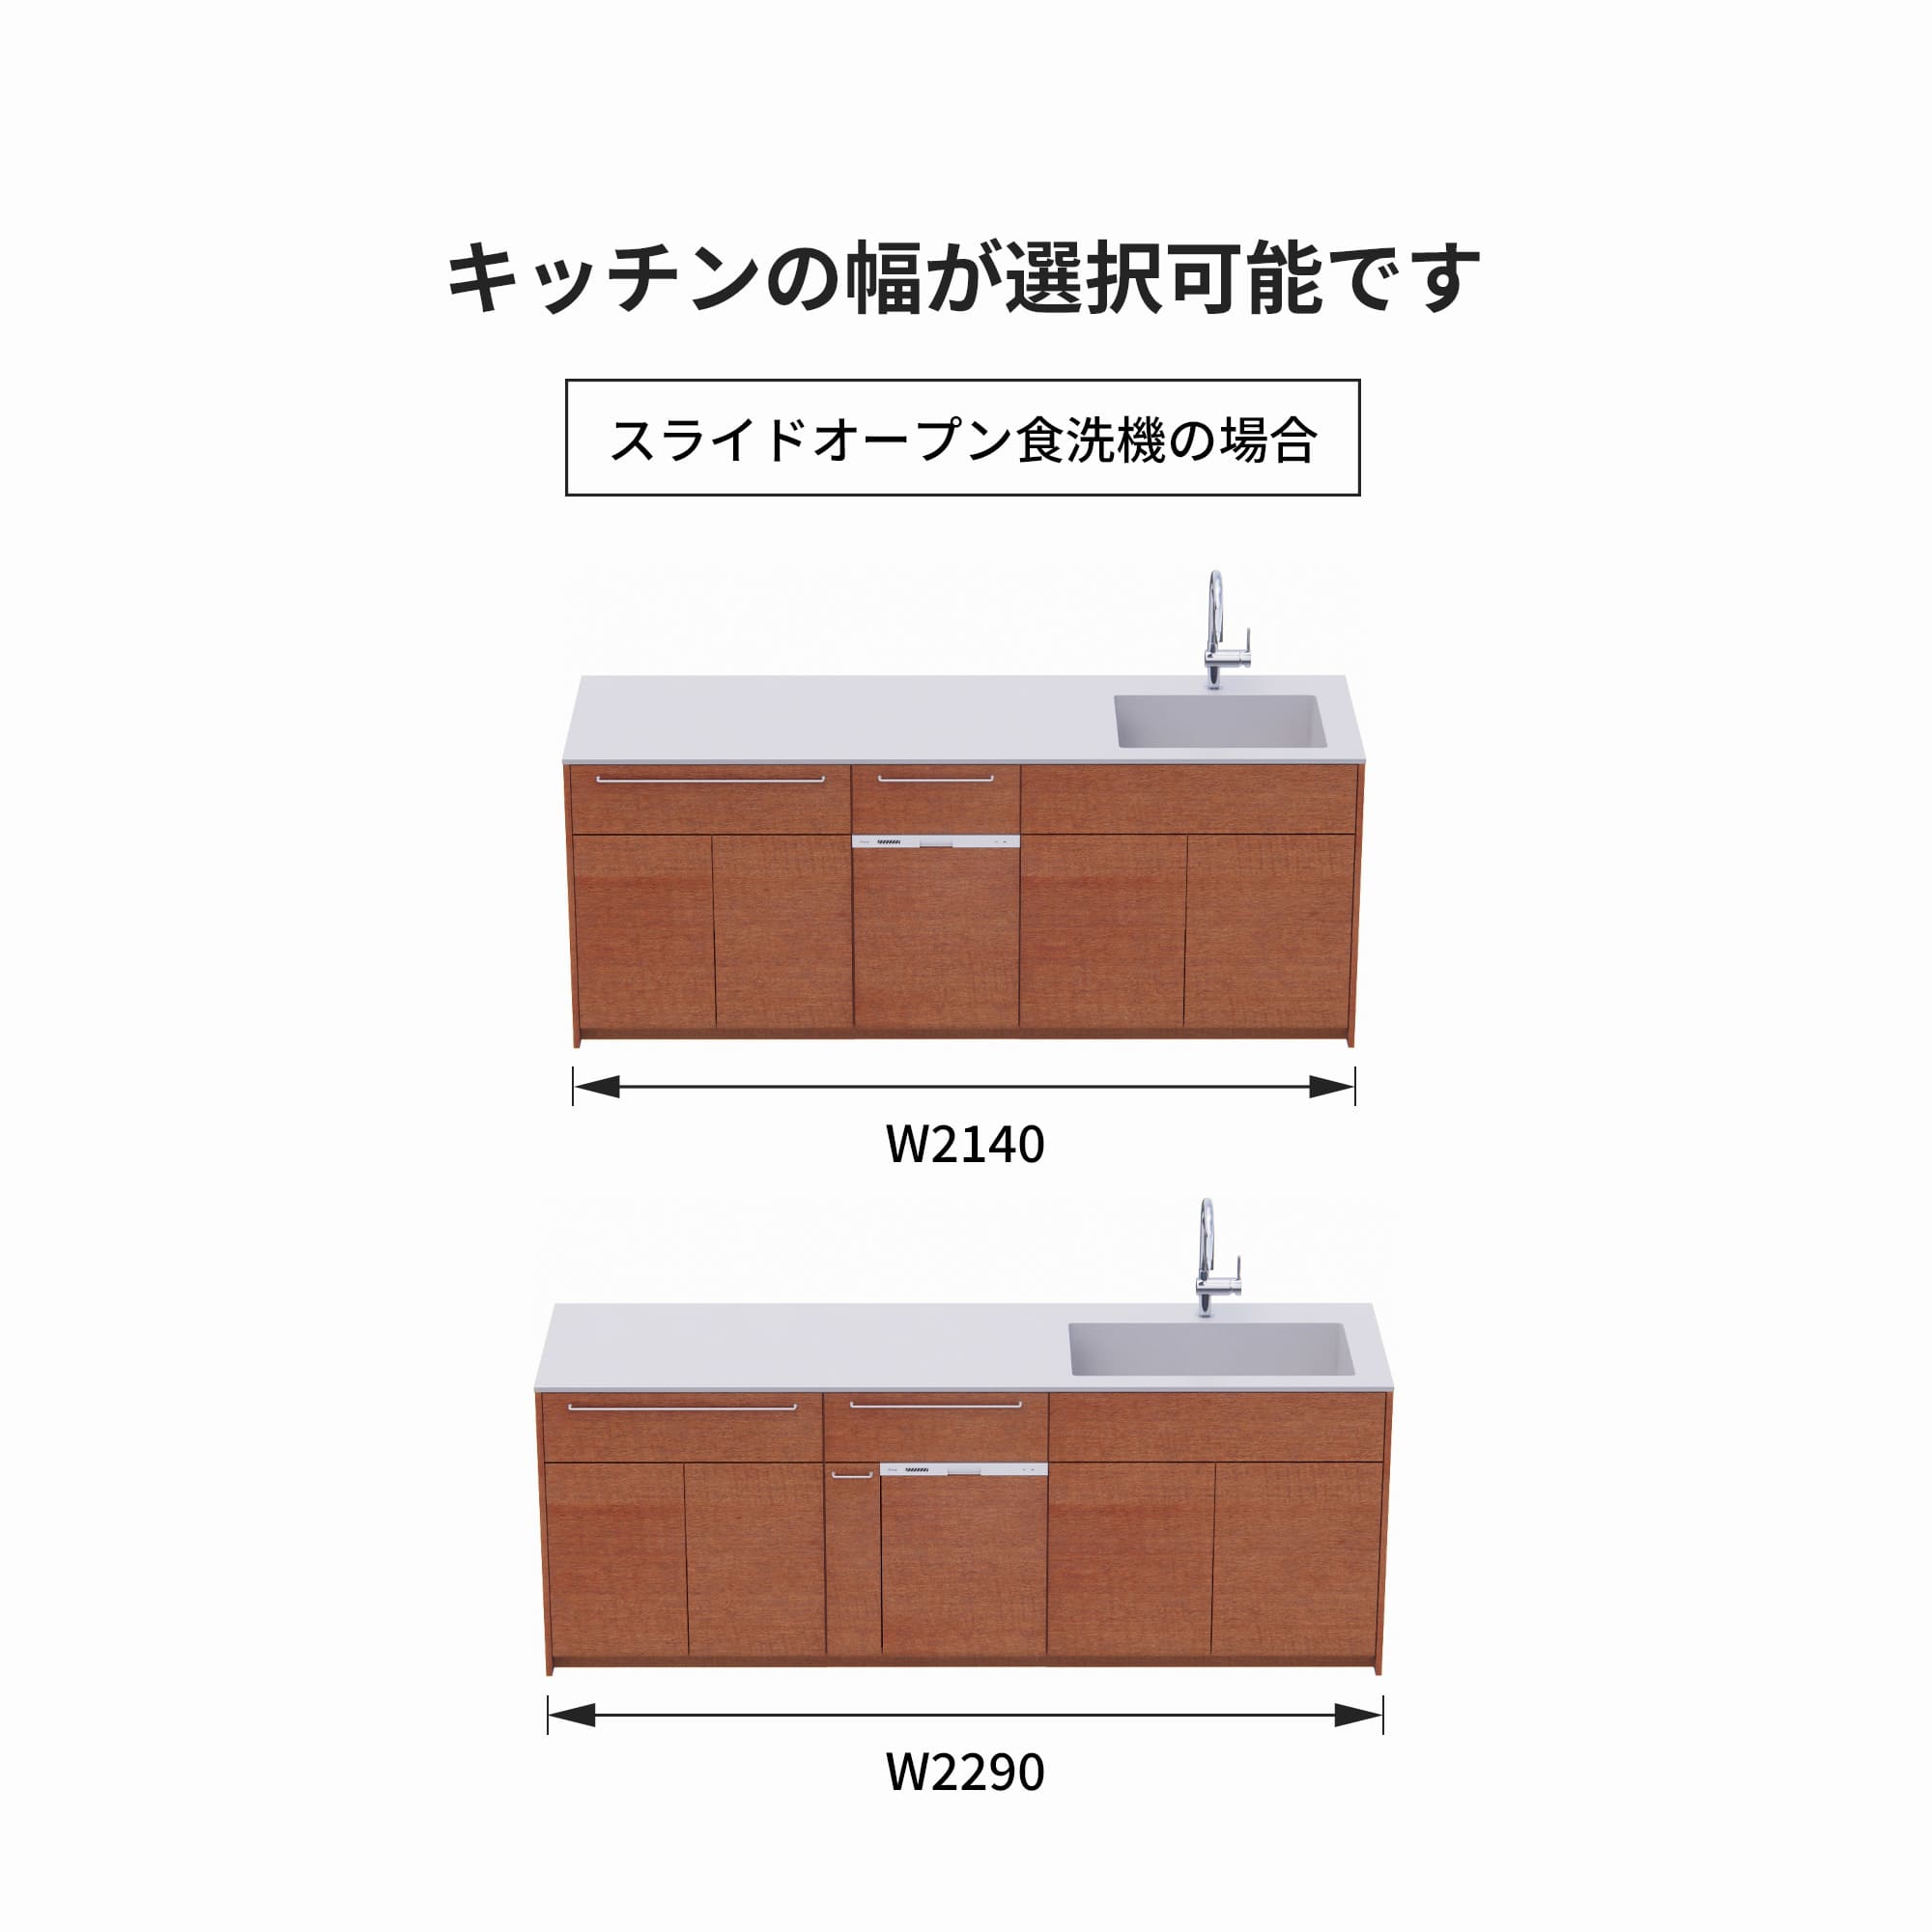 木製システムキッチン 壁付け型 W2140～2290・コンロなし / オーブンなし / 食洗機あり KB-KC022-21-G183 スライドオープンの場合